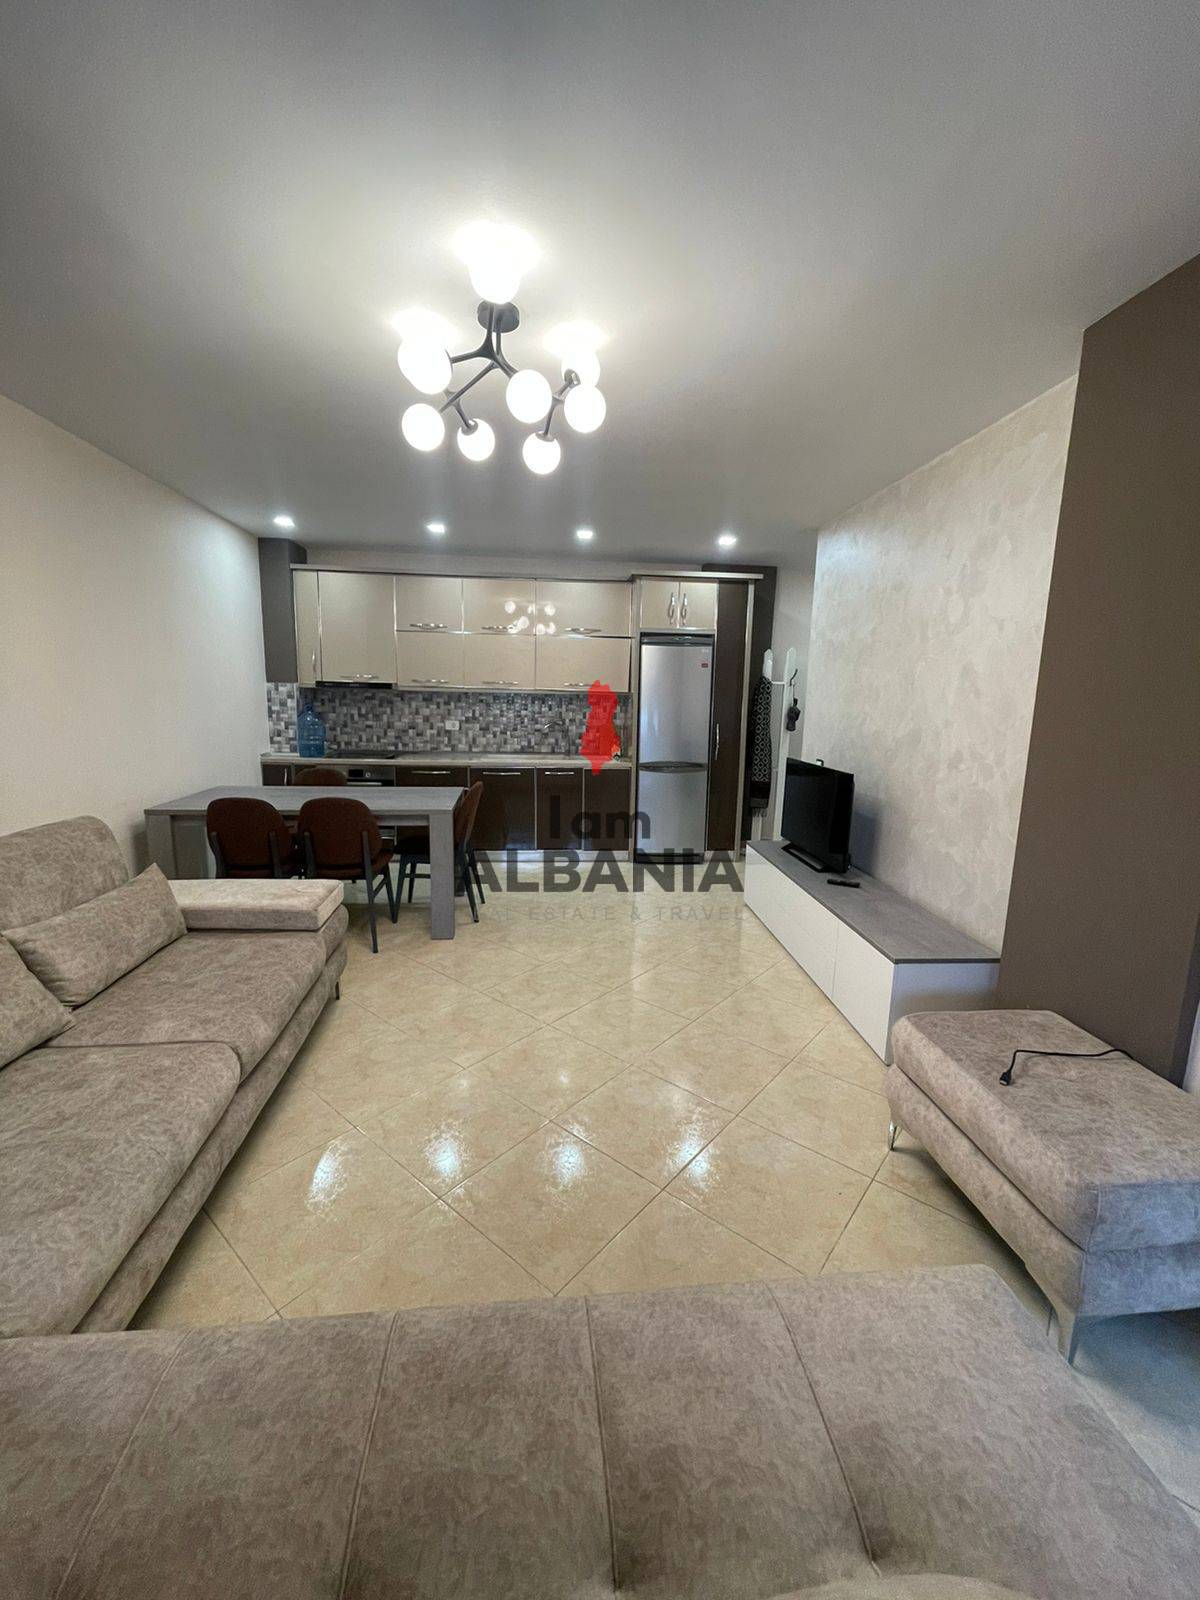 Albánsko, 2-izbový byt o výmere 70 m2